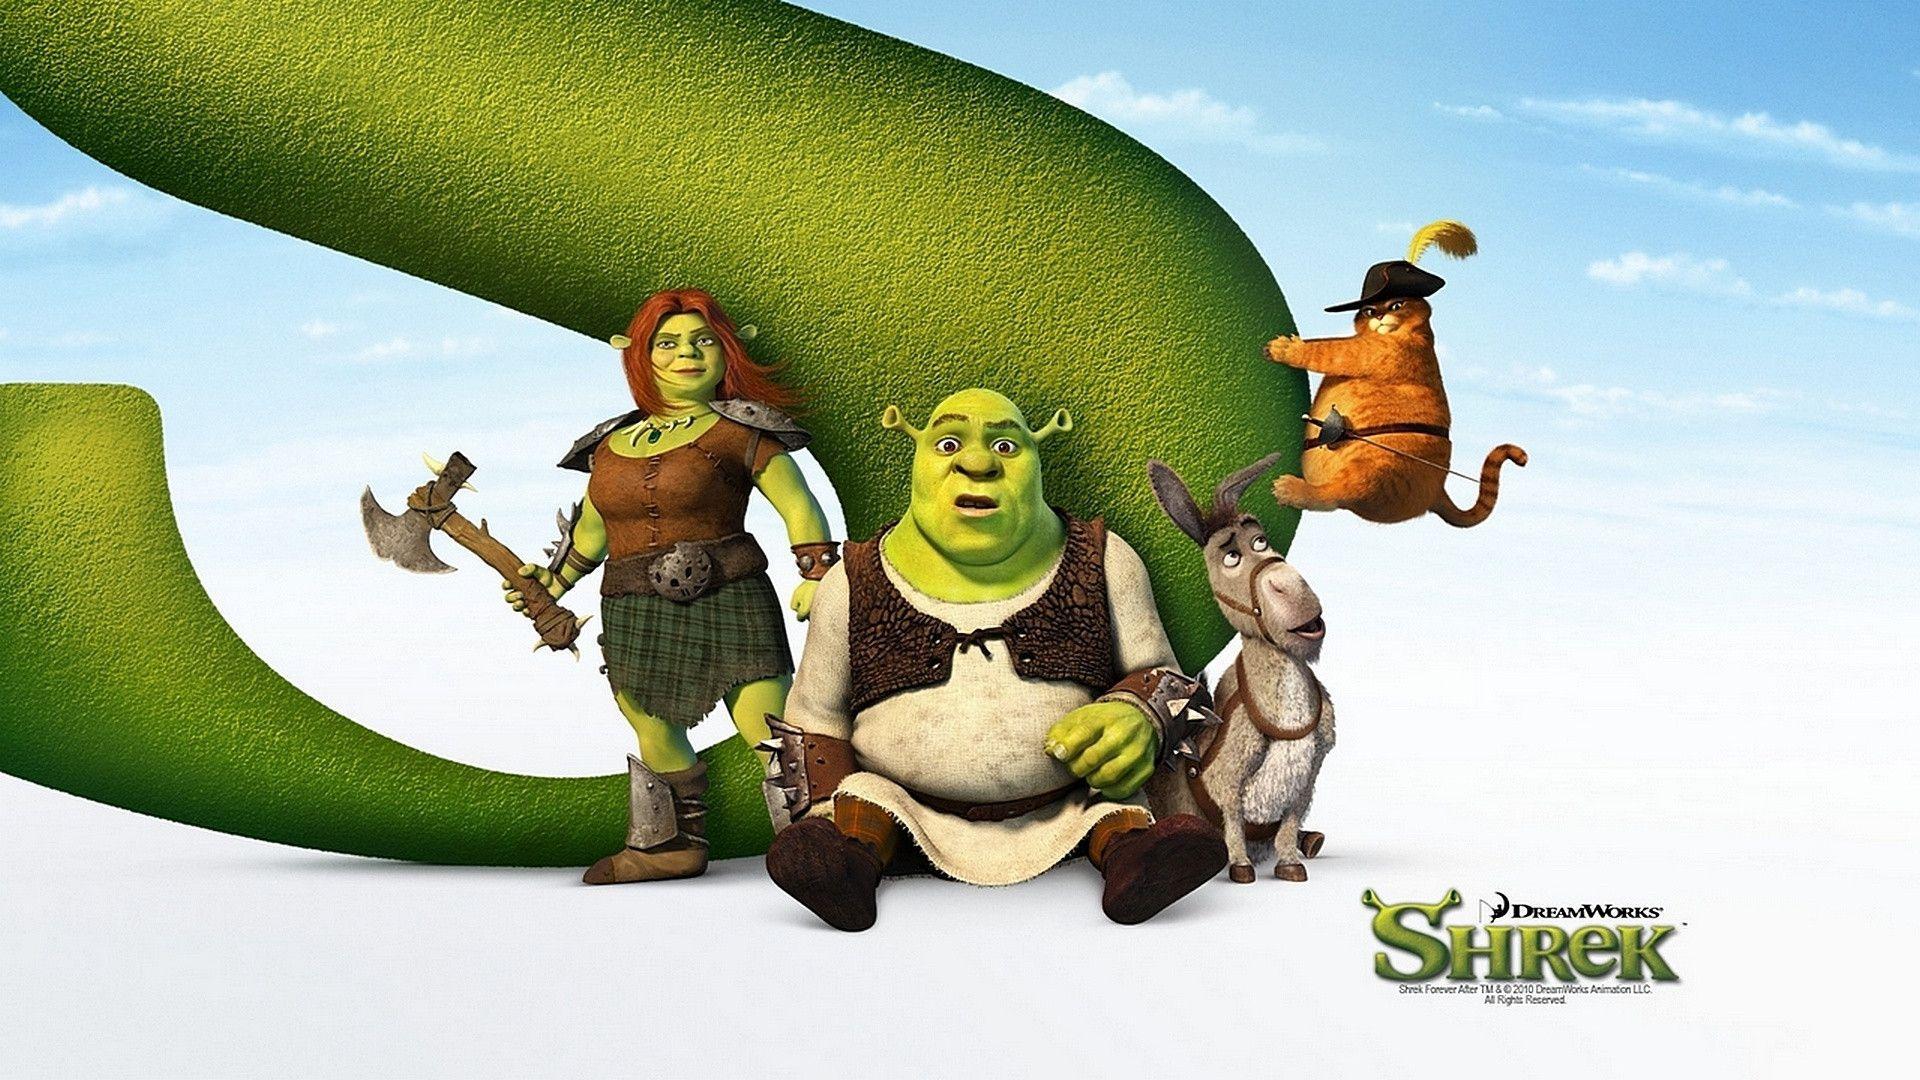 Shrek Wallpapers, Shrek Backgrounds, Shrek Free HD Wallpapers.